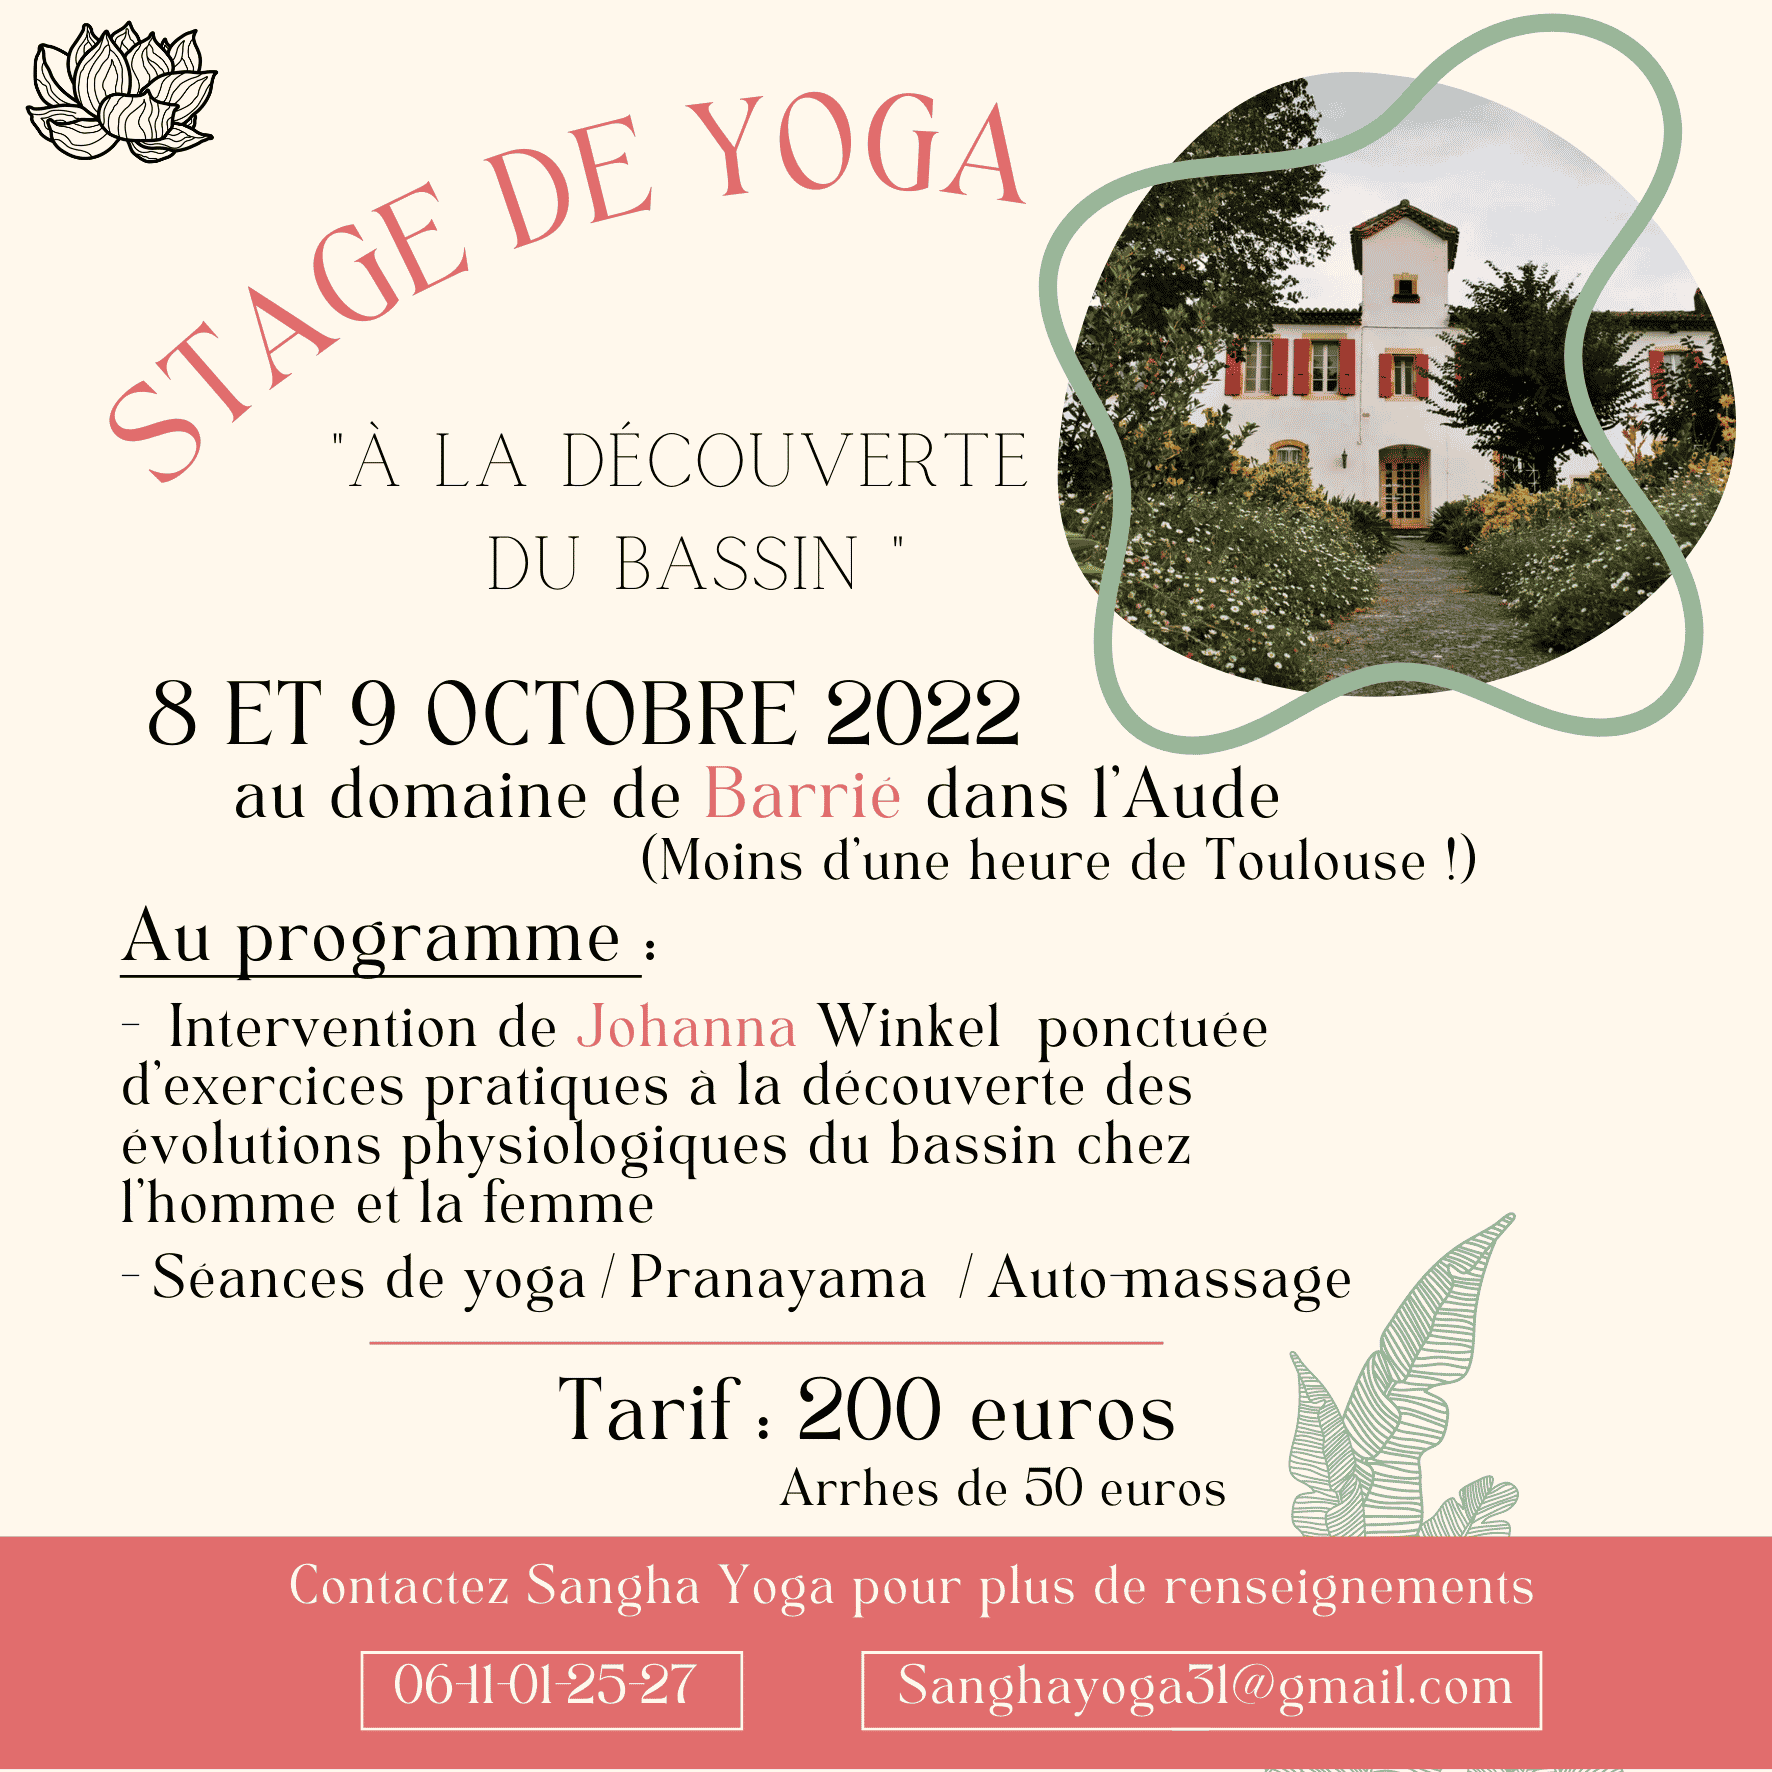 SANGHA YOGA 31 . Cours de yoga à Toulouse 31400 
Stages de yoga à Toulouse 